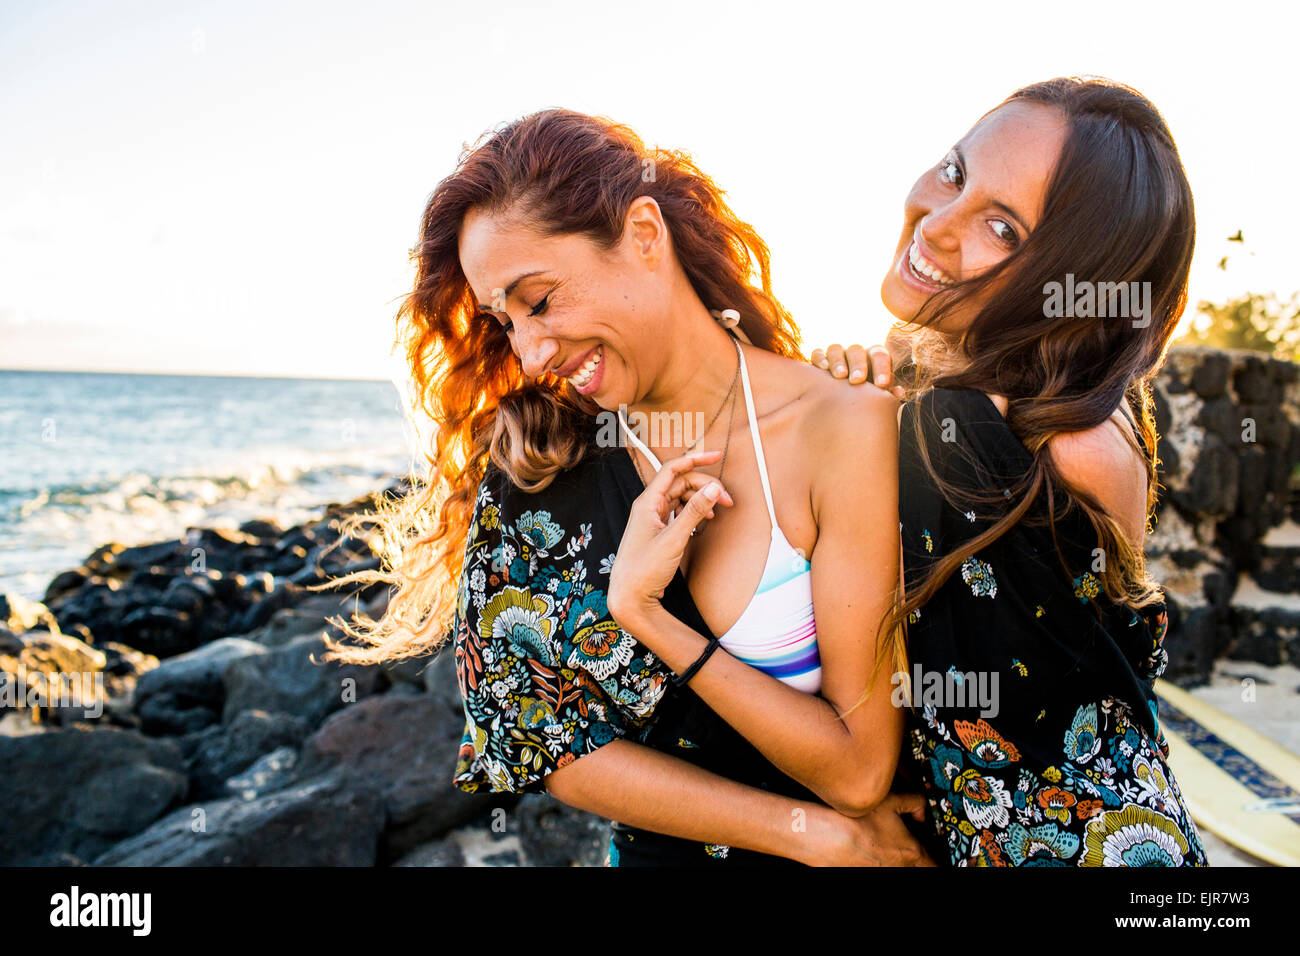 Rire des femmes on Rocky beach Banque D'Images